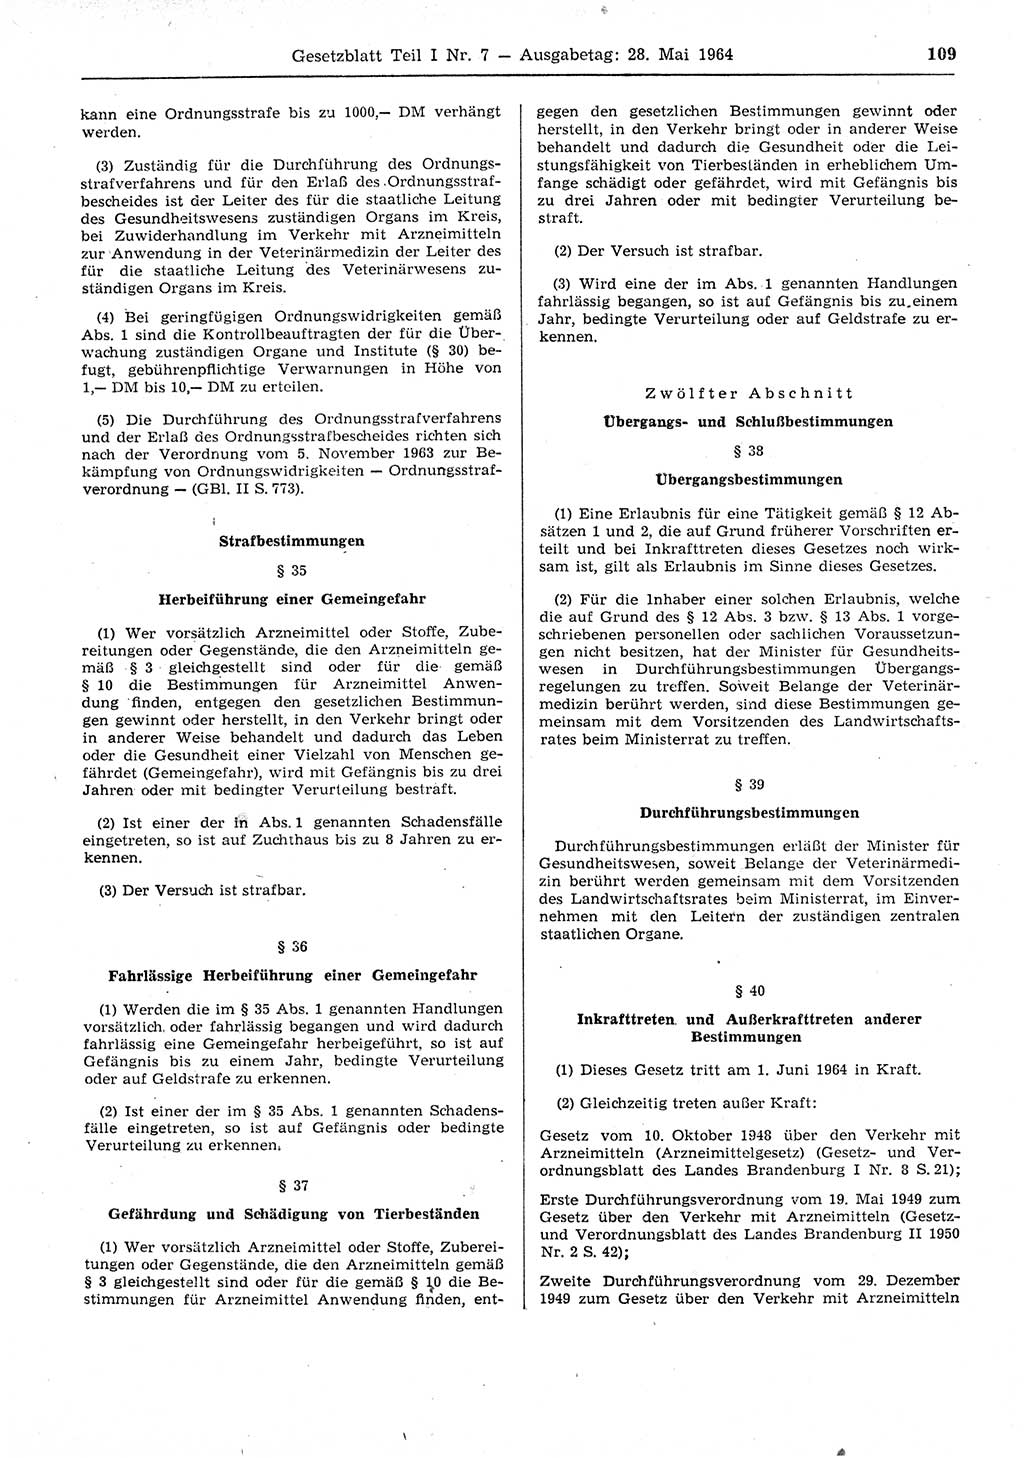 Gesetzblatt (GBl.) der Deutschen Demokratischen Republik (DDR) Teil Ⅰ 1964, Seite 109 (GBl. DDR Ⅰ 1964, S. 109)